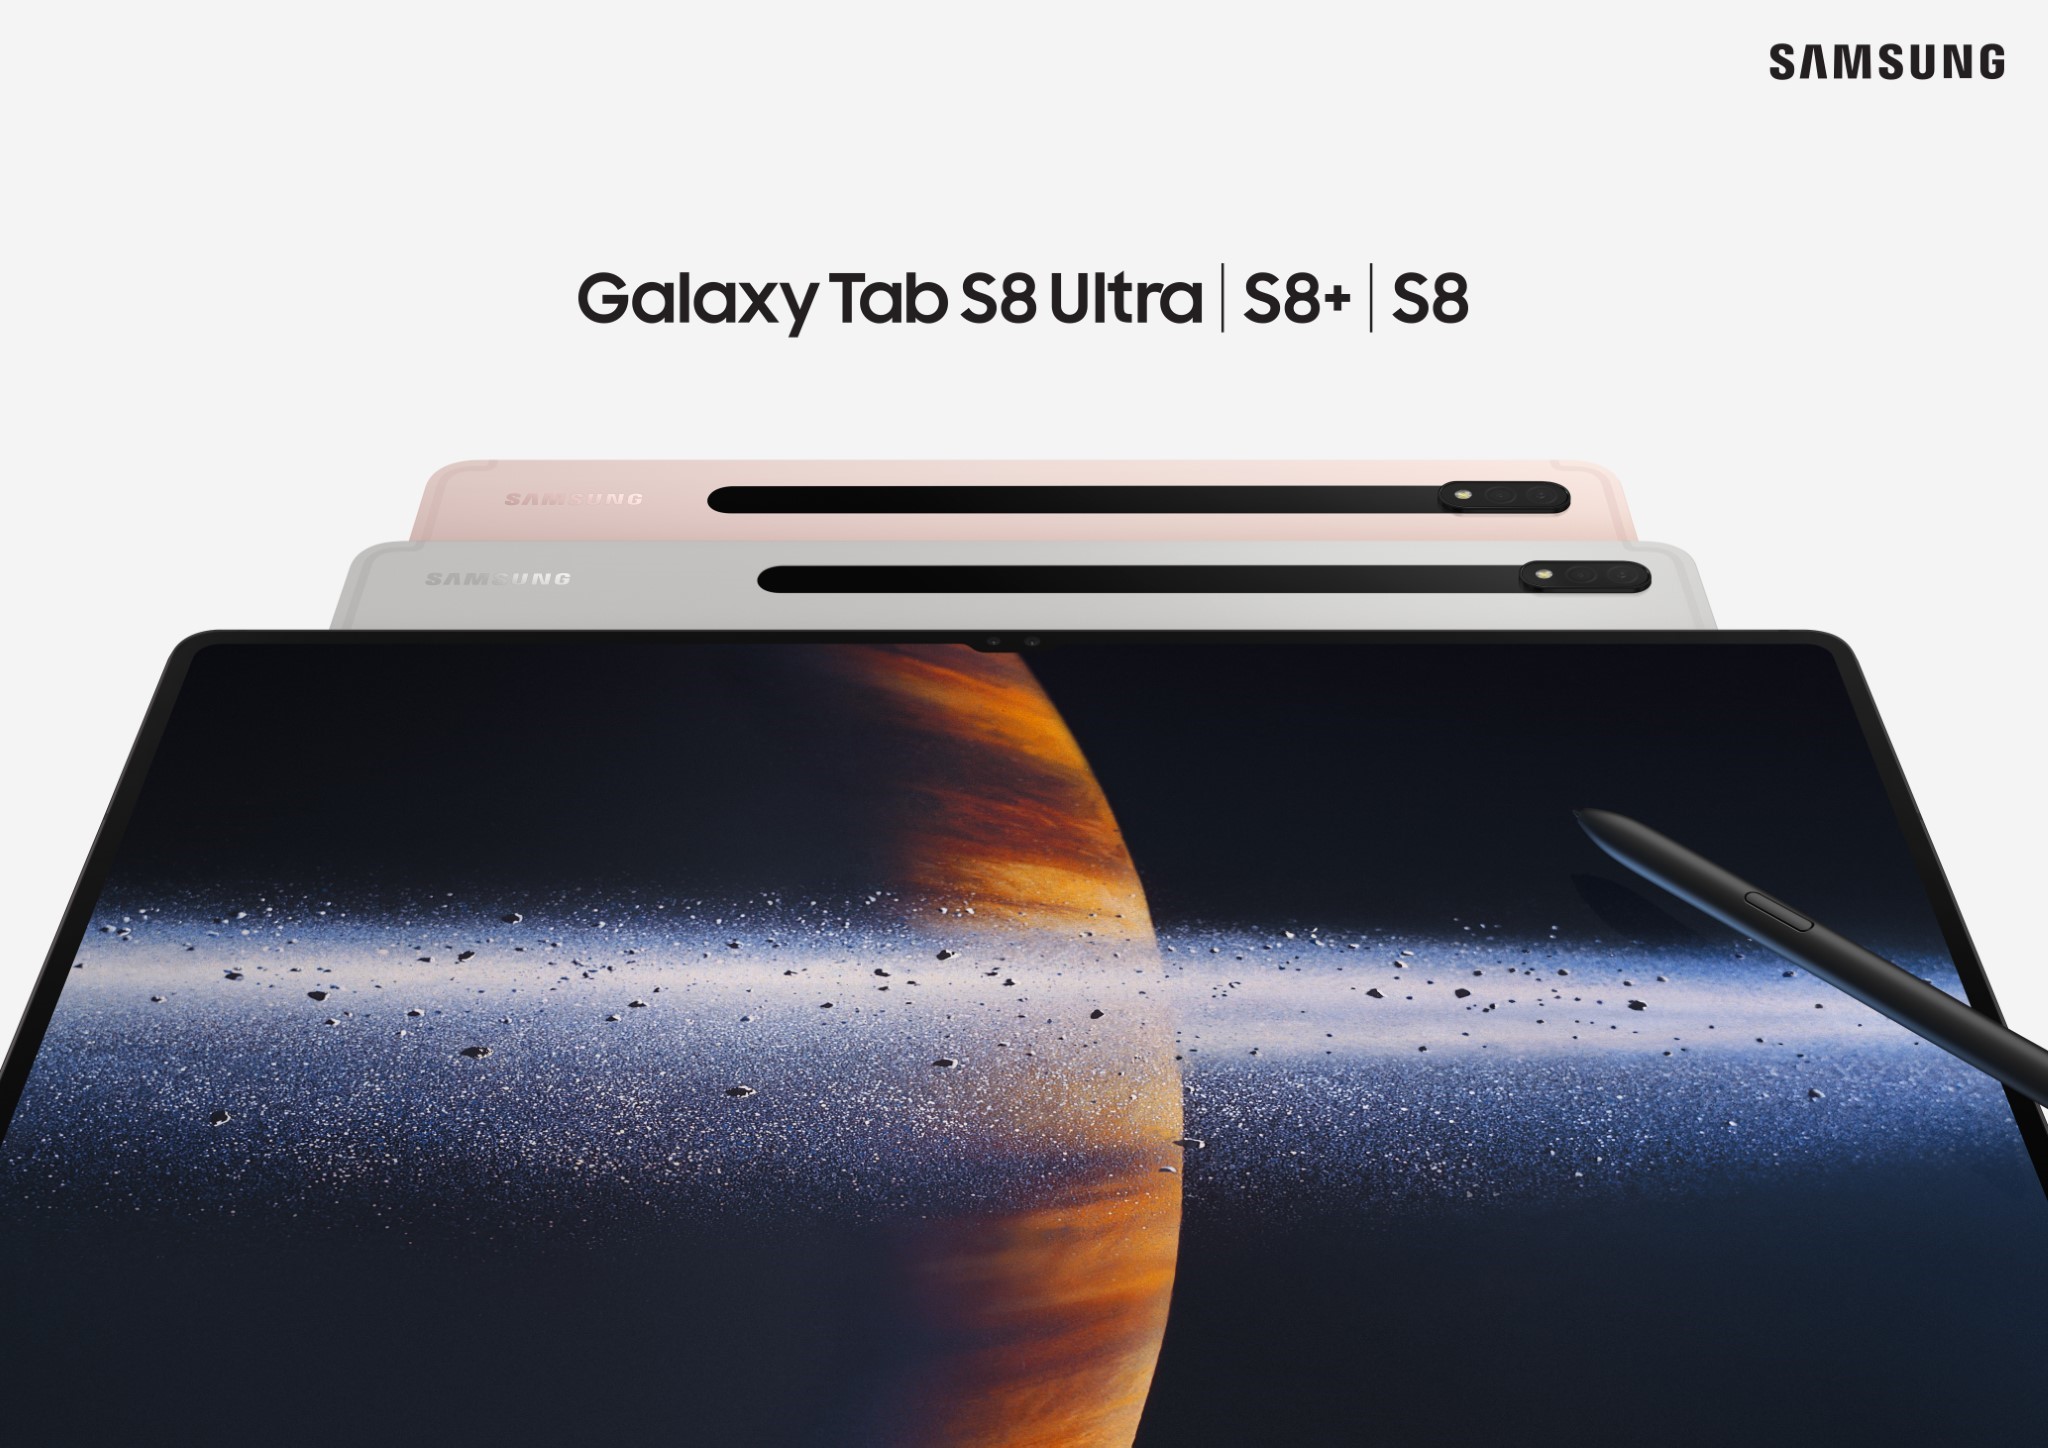 Samsung Galaxy Tab S8 series chính thức: S8 Ultra có thiết kế với cụm notch trên màn hình